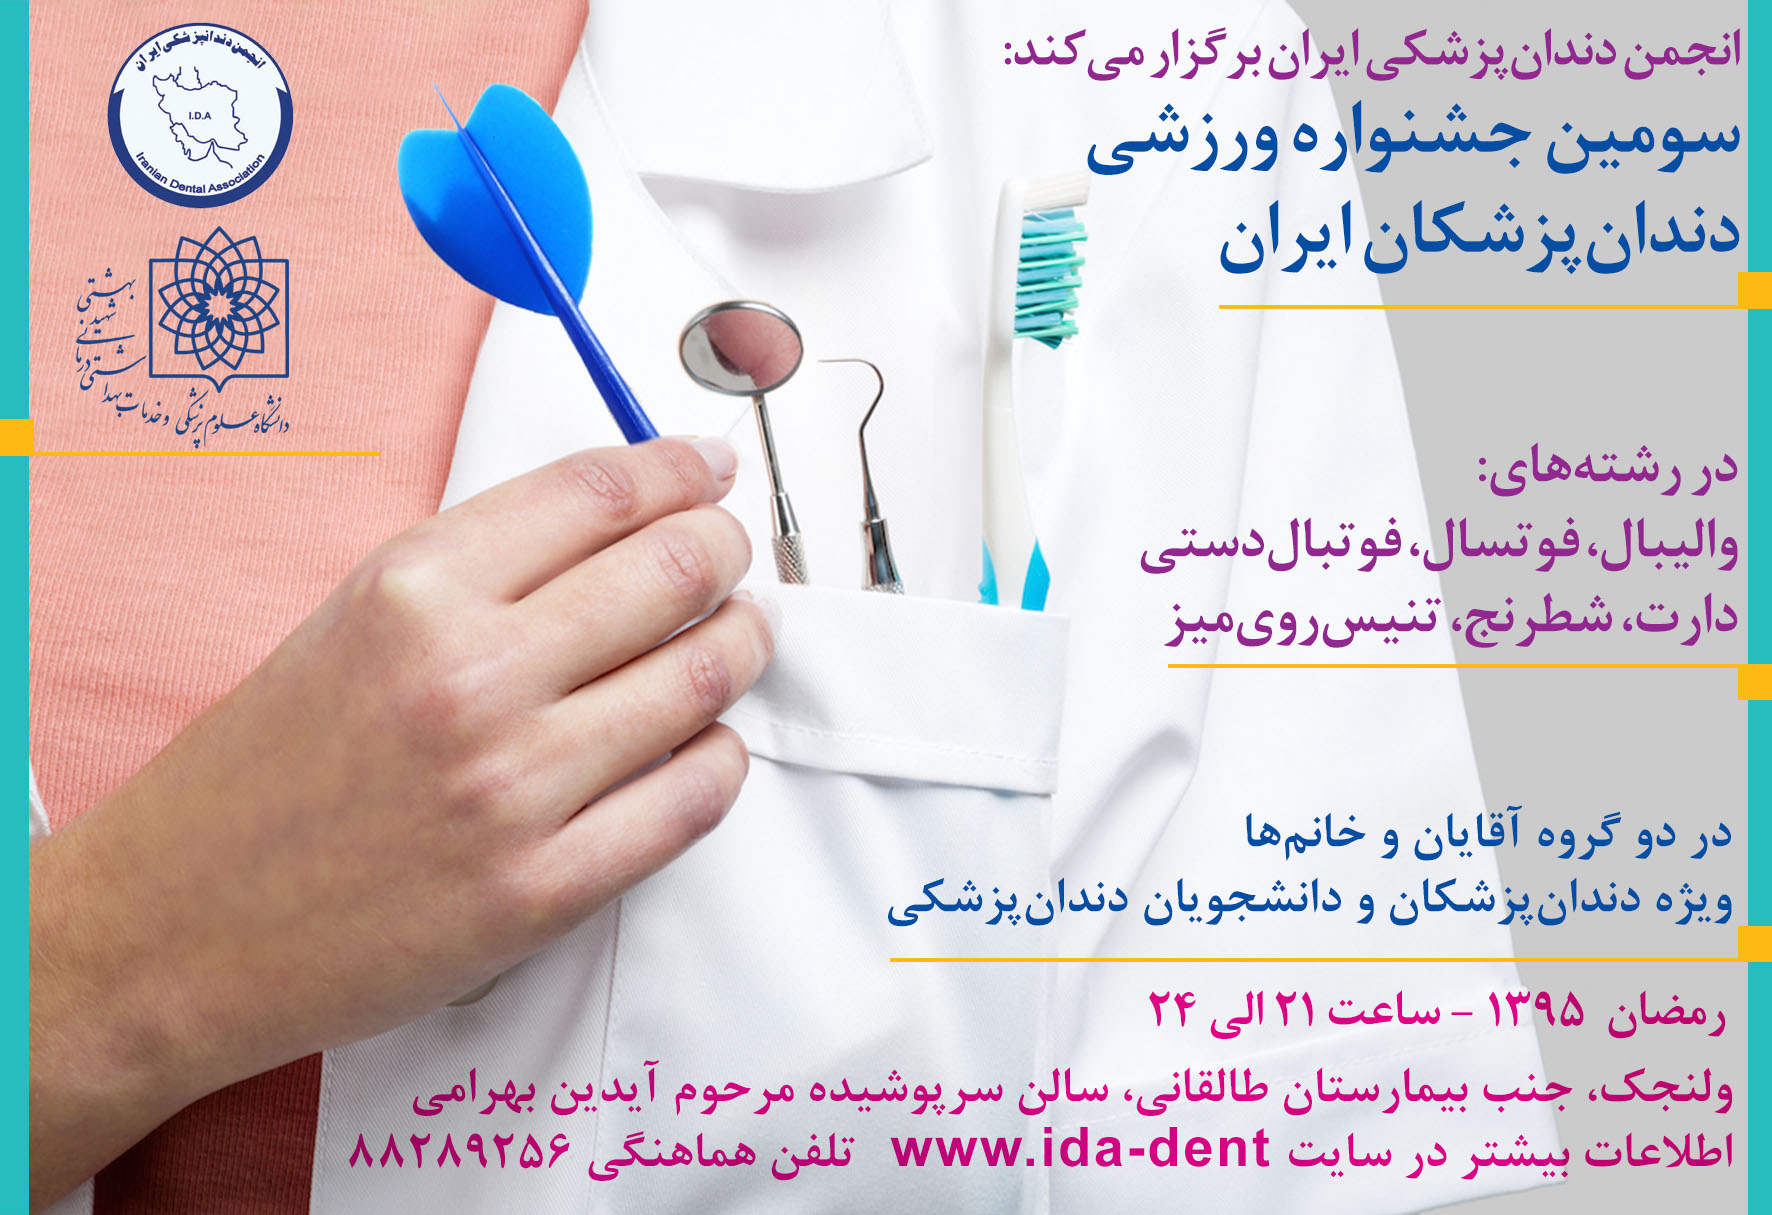 سومین جشنواره ورزشی دندان پزشکان ایران در ماه مبارک رمضان